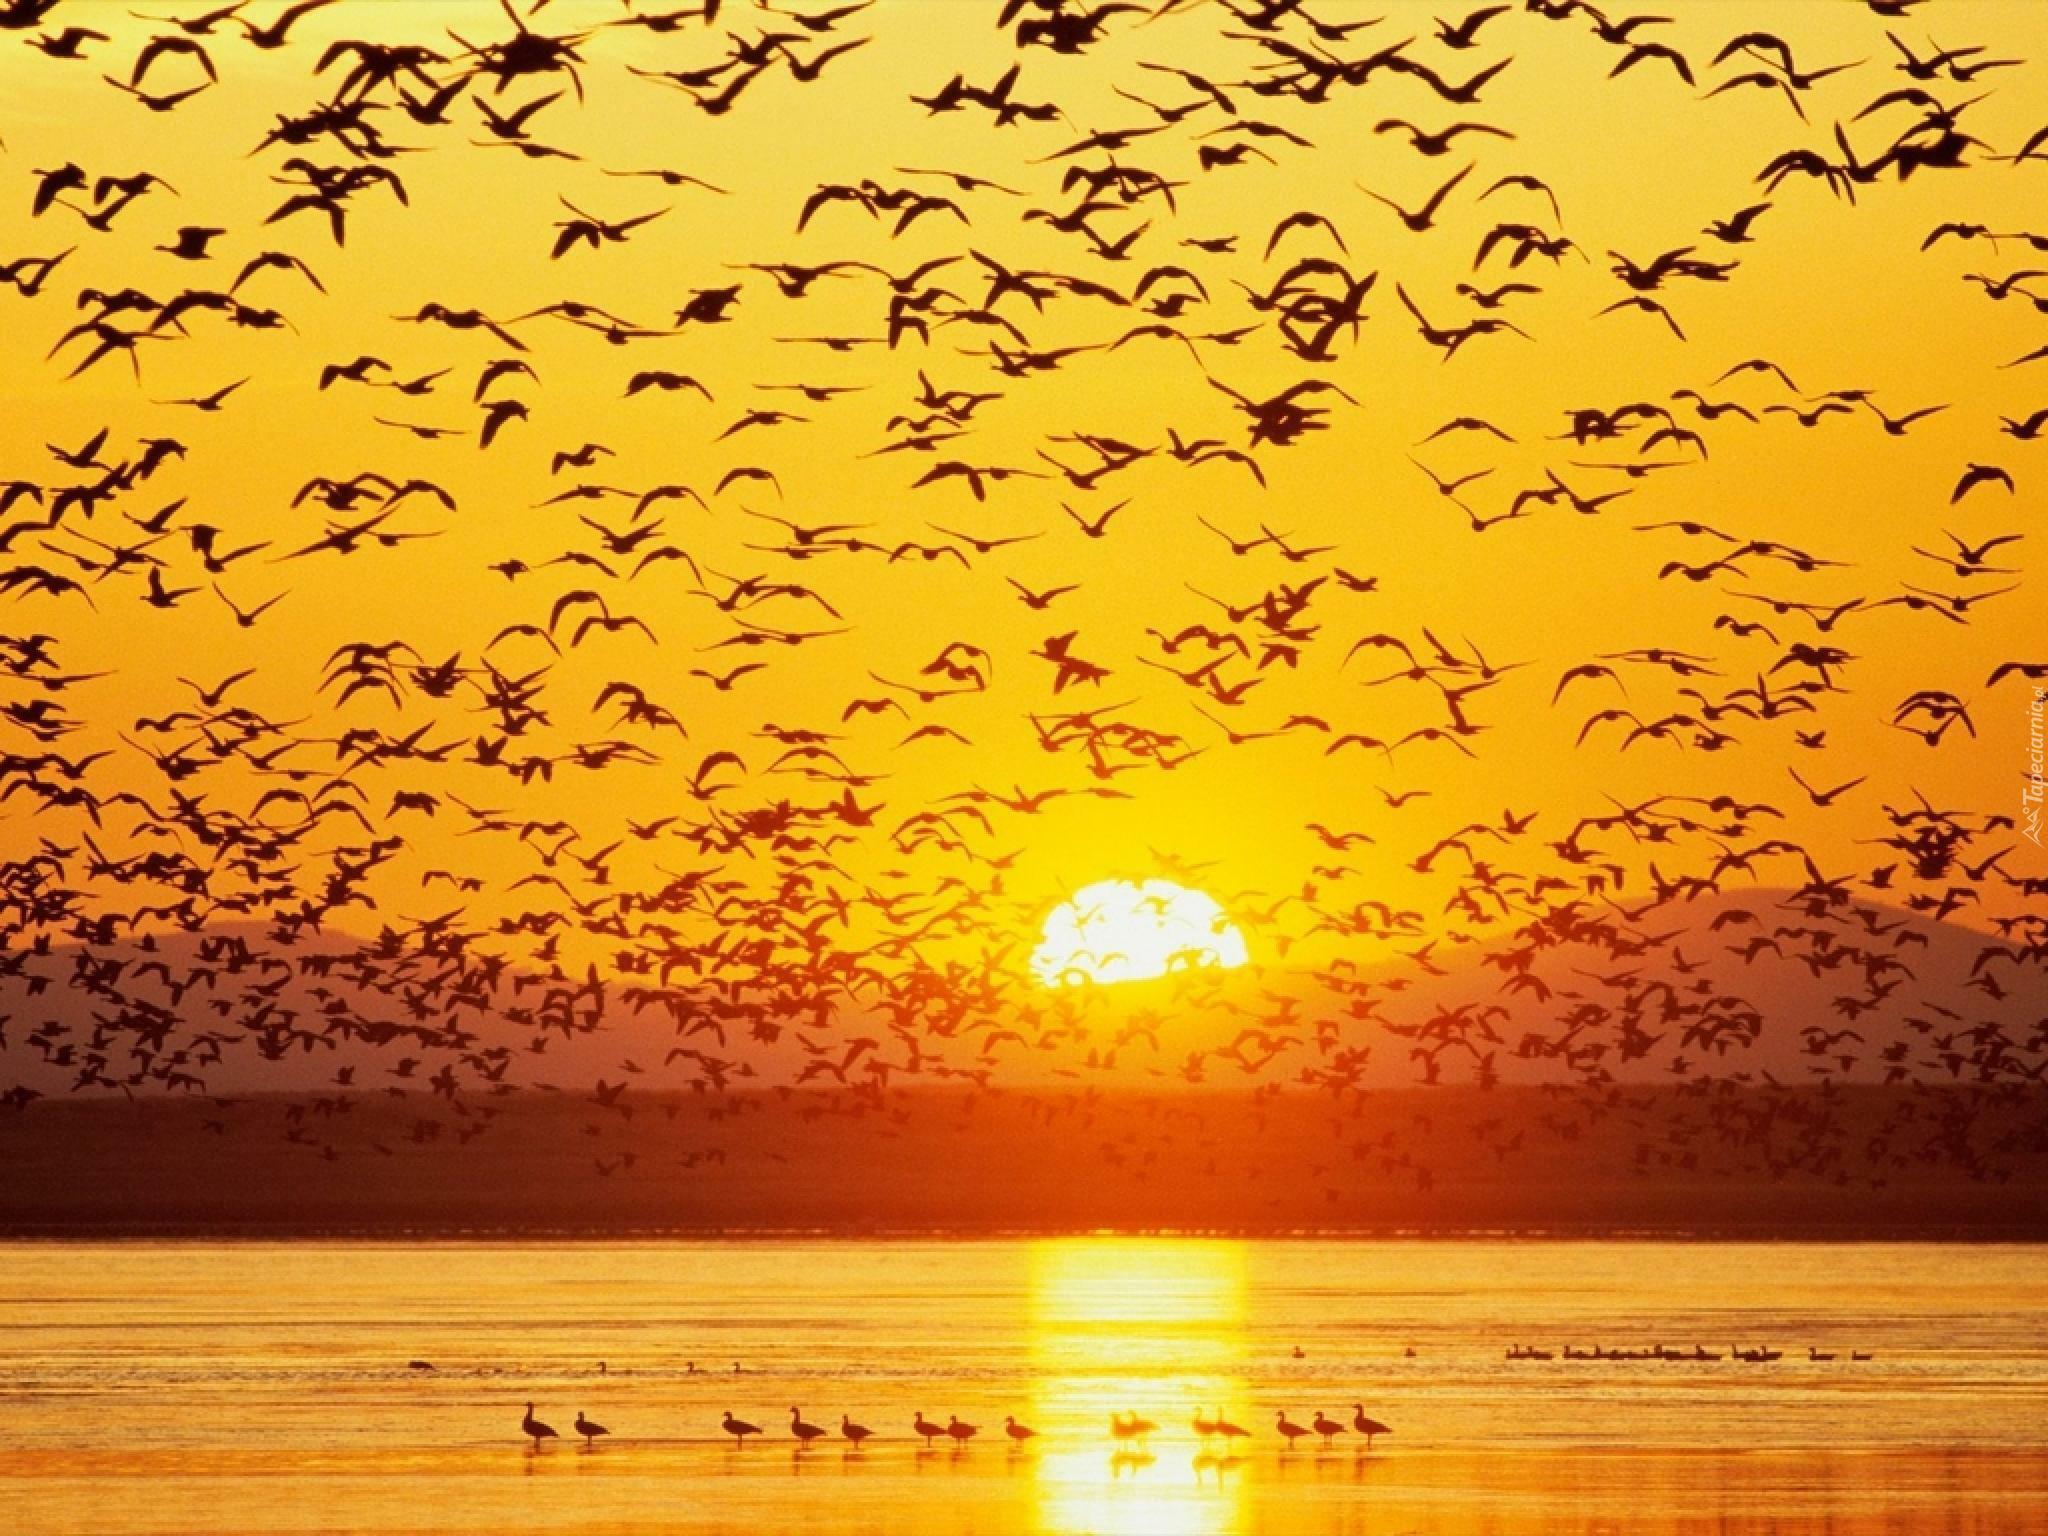 Словно стая птиц. Стая птиц. Птицы на закате. Закат солнца и птицы. Стая желтых птиц.